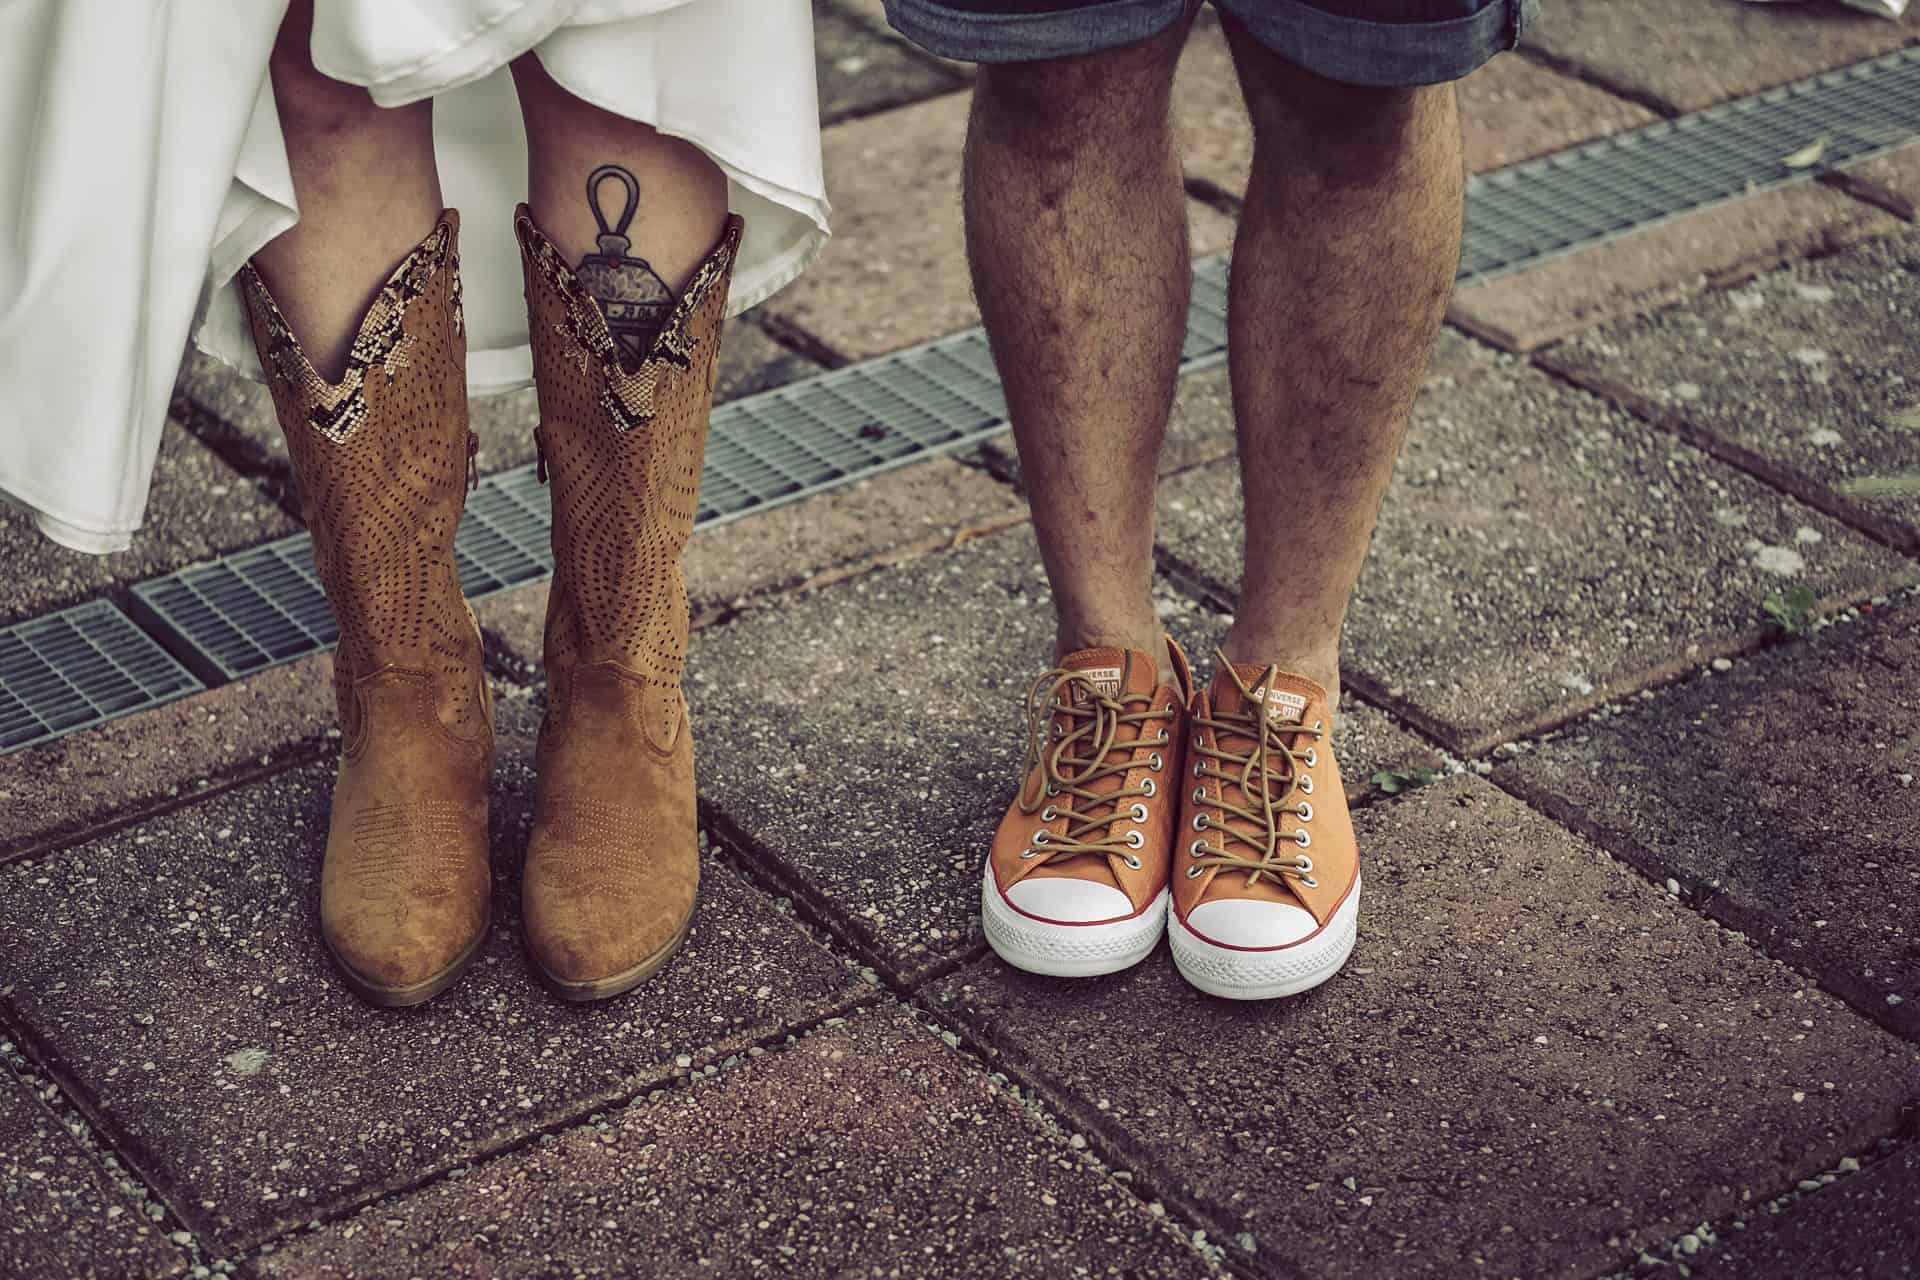 Ein Mann und eine Frau stehen nebeneinander und tragen braune Stiefel.